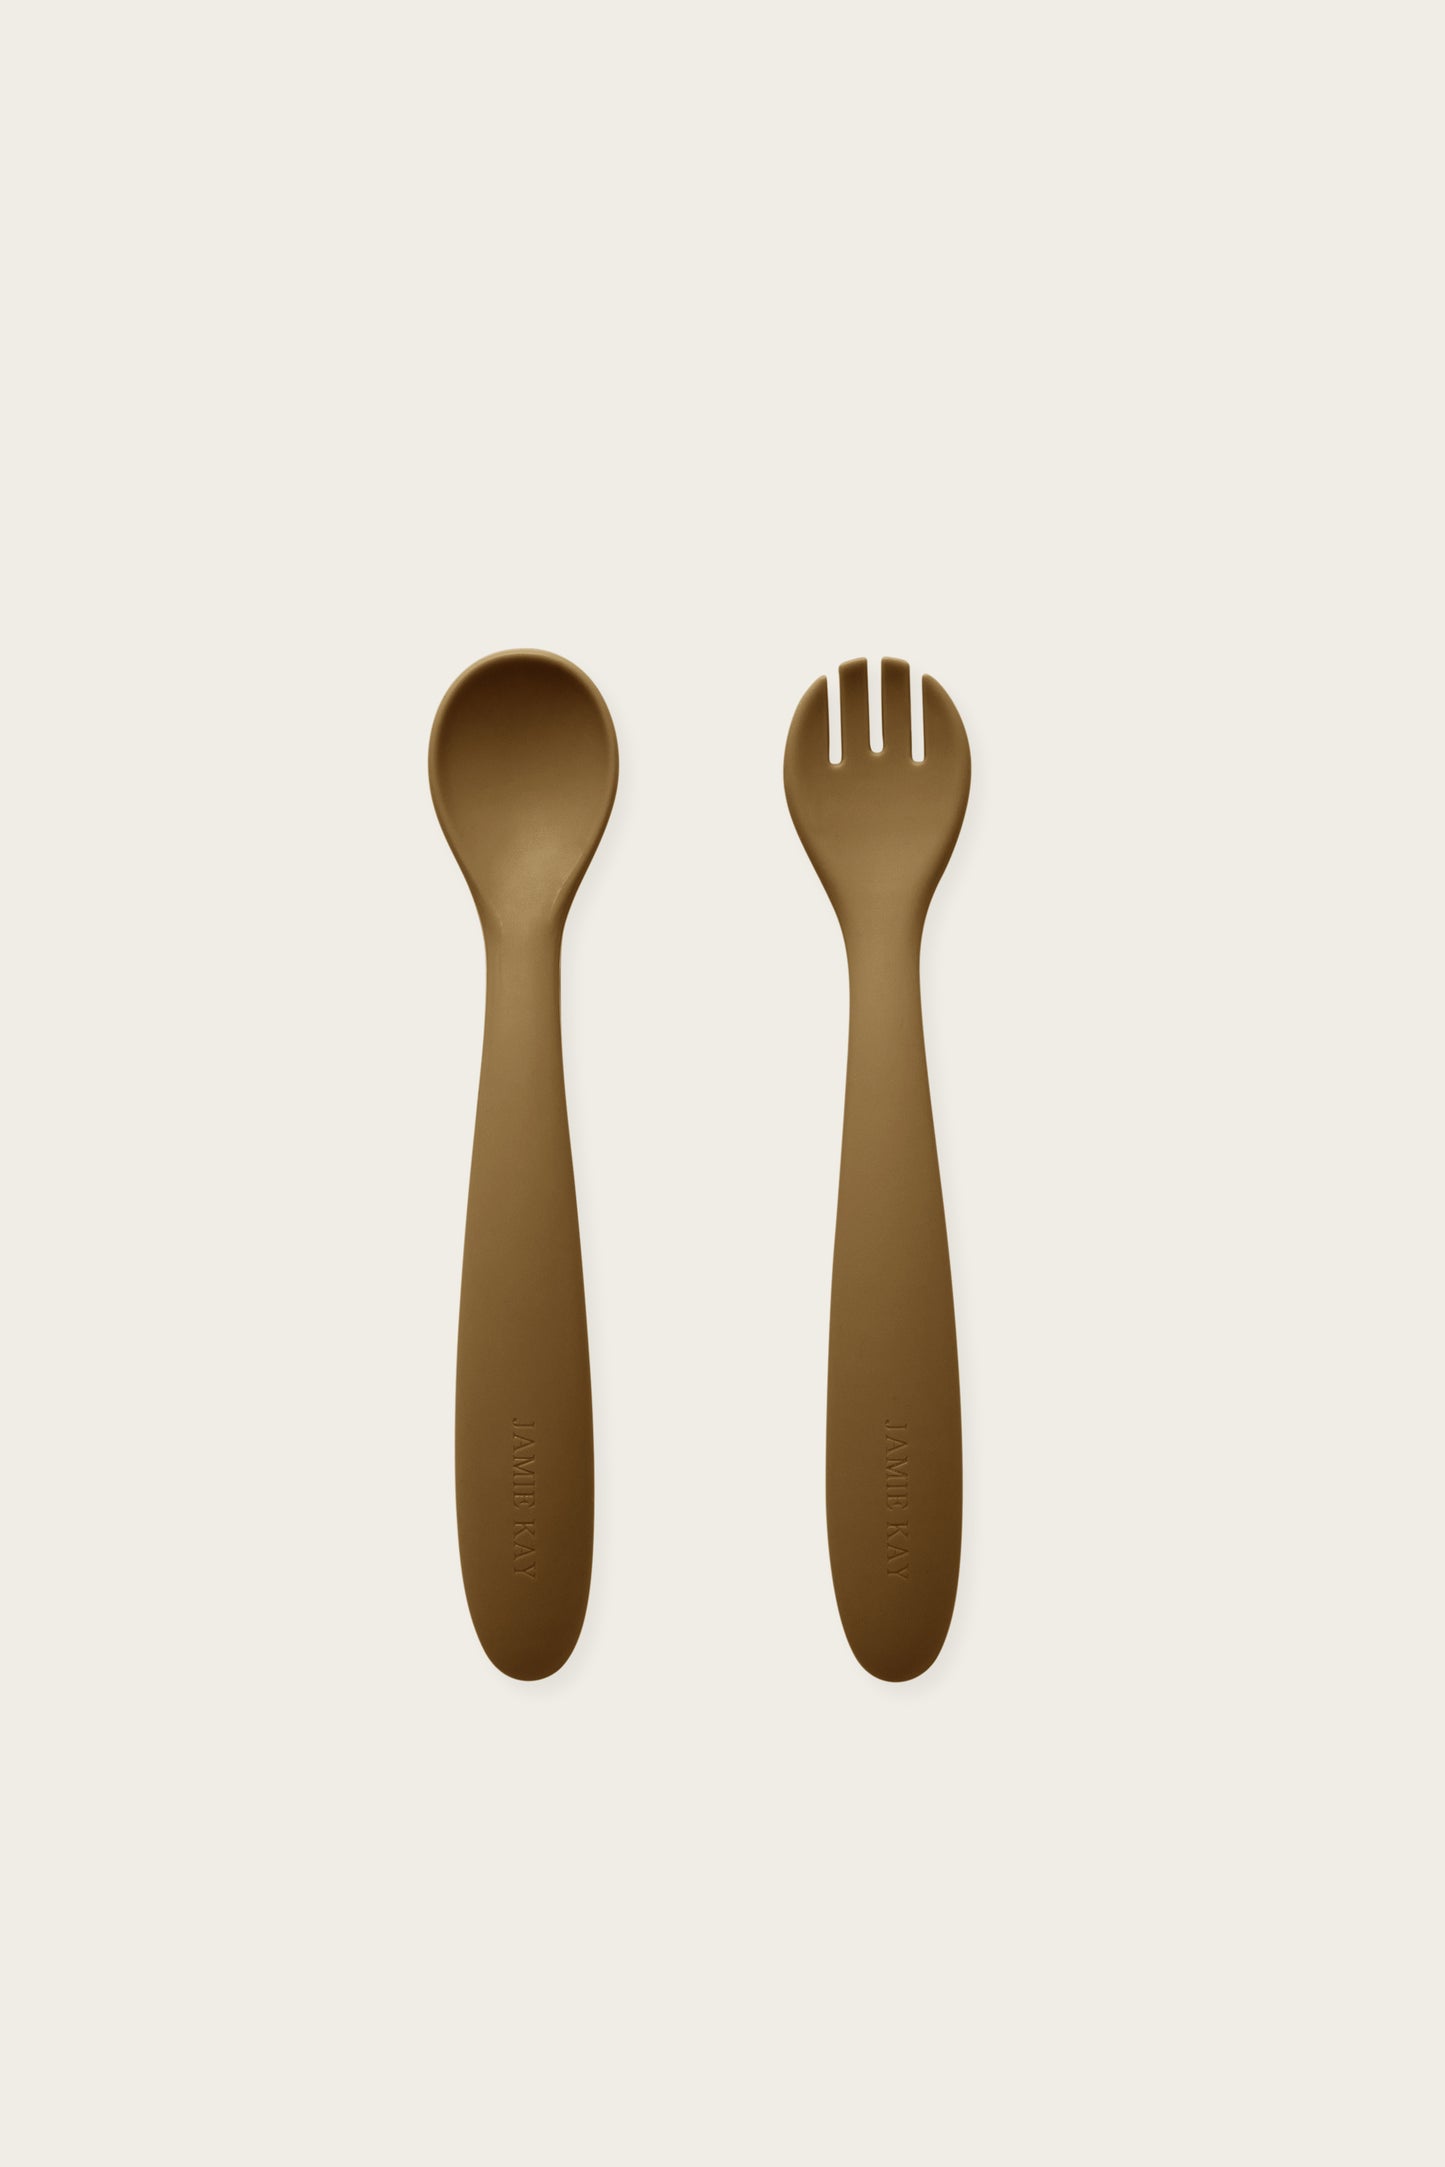 Jamie Kay - Spoon & Fork Set